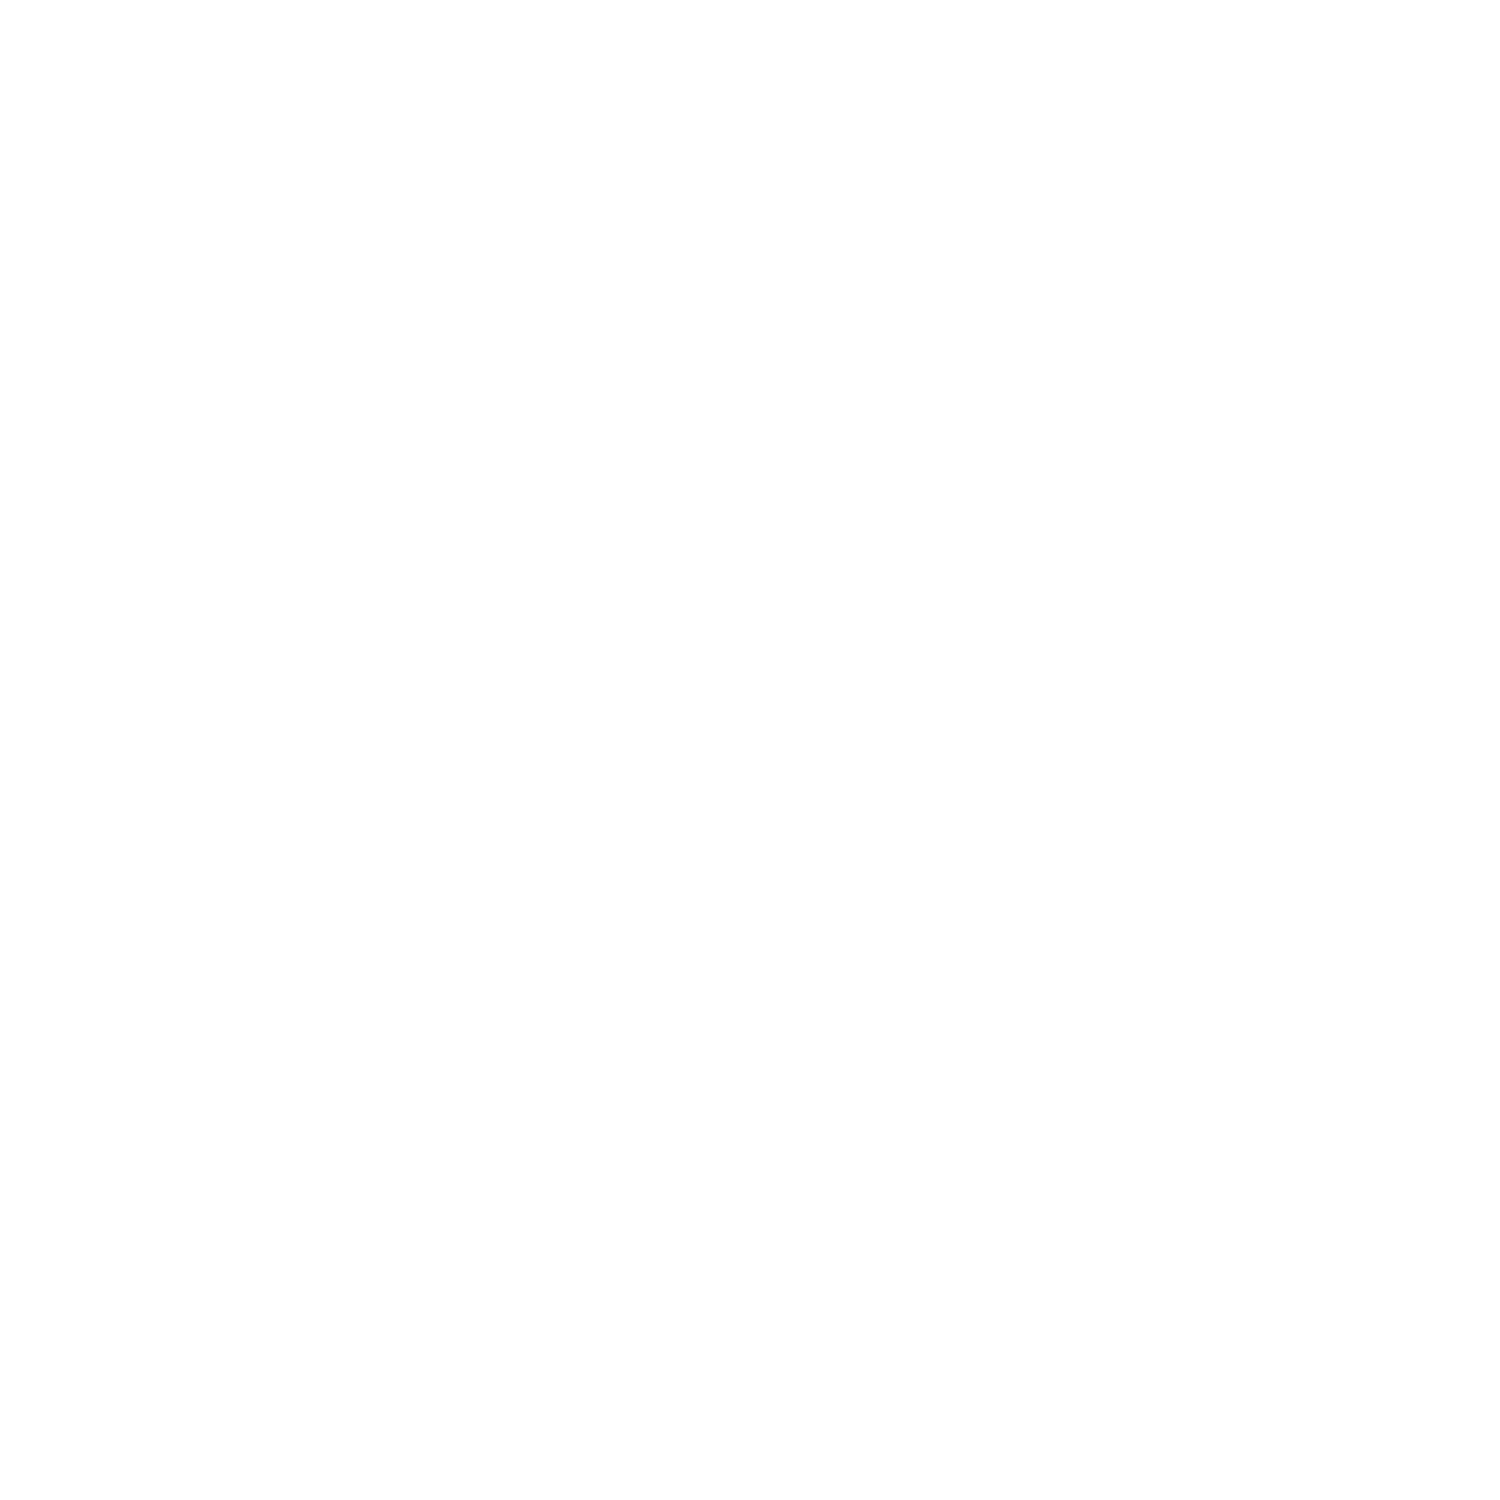 スイス機械式時計ブランド CVSTOS × サイクリストに愛される ONOMICHI U2